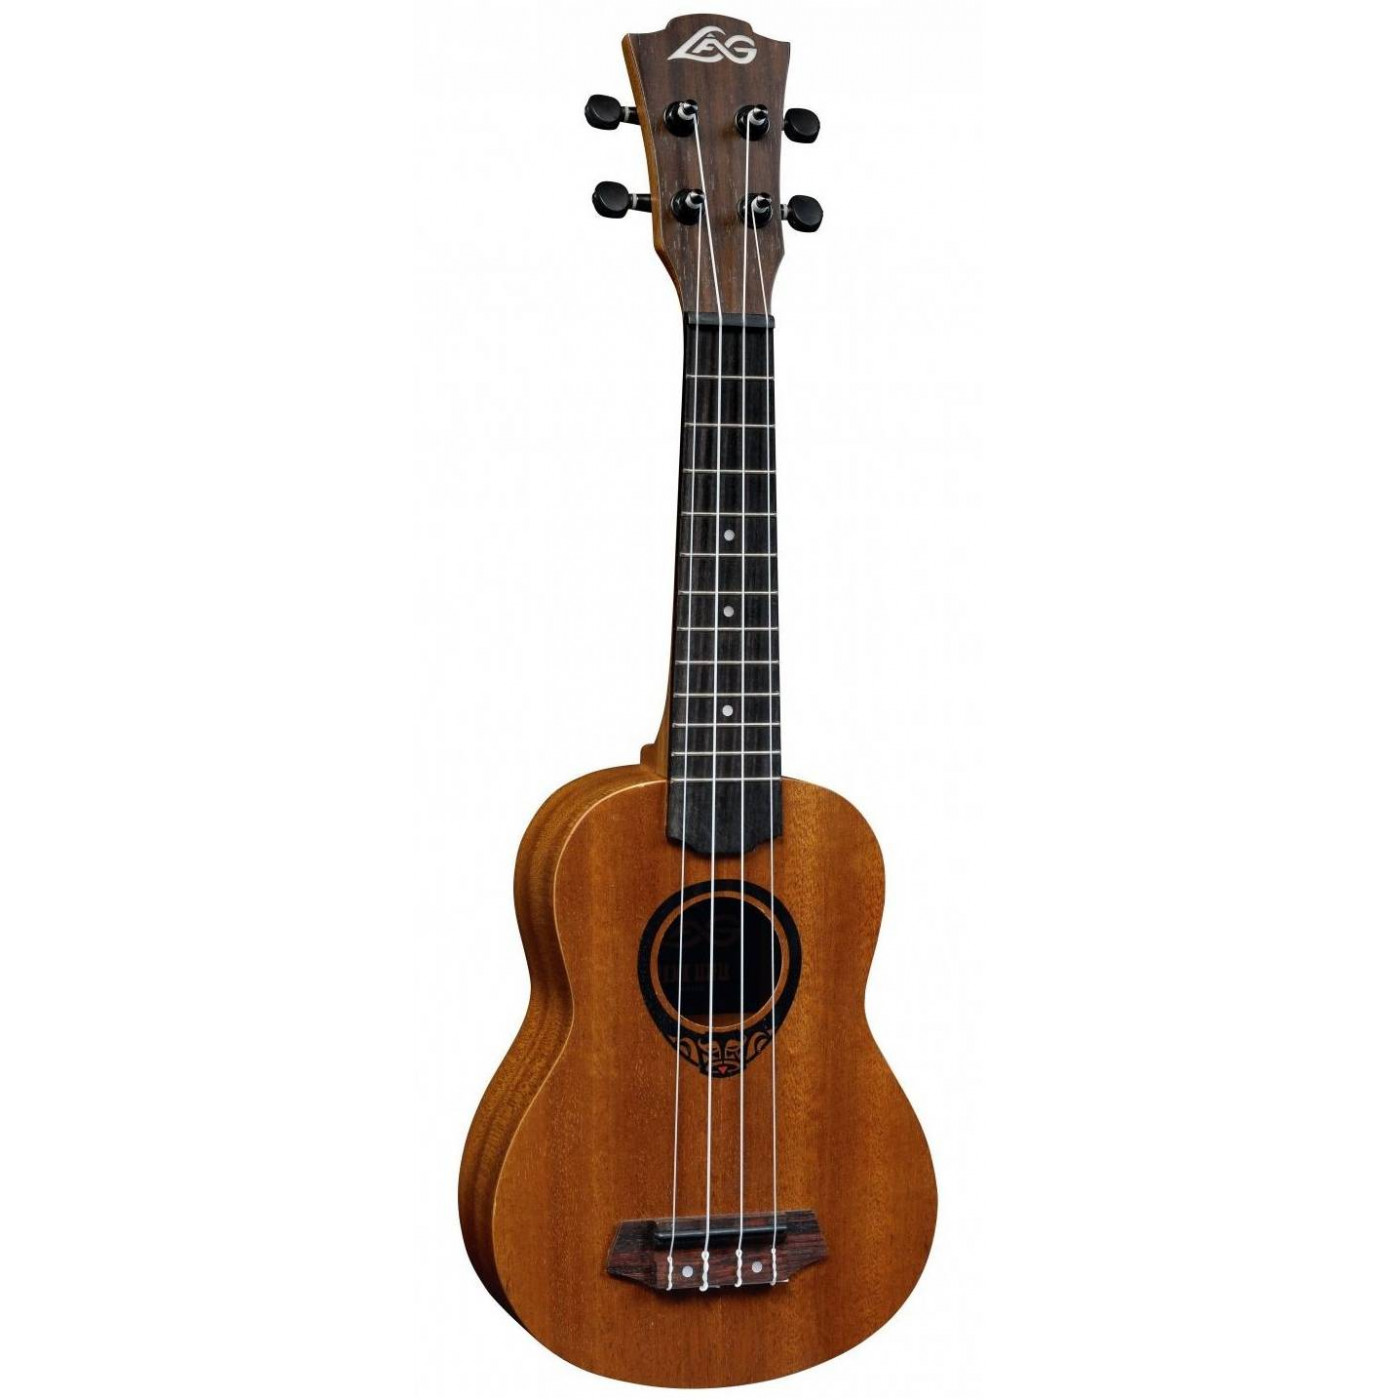 Укулеле LAG TKU-10S портативный гитара укулеле скрипка деревянный подставка крюк